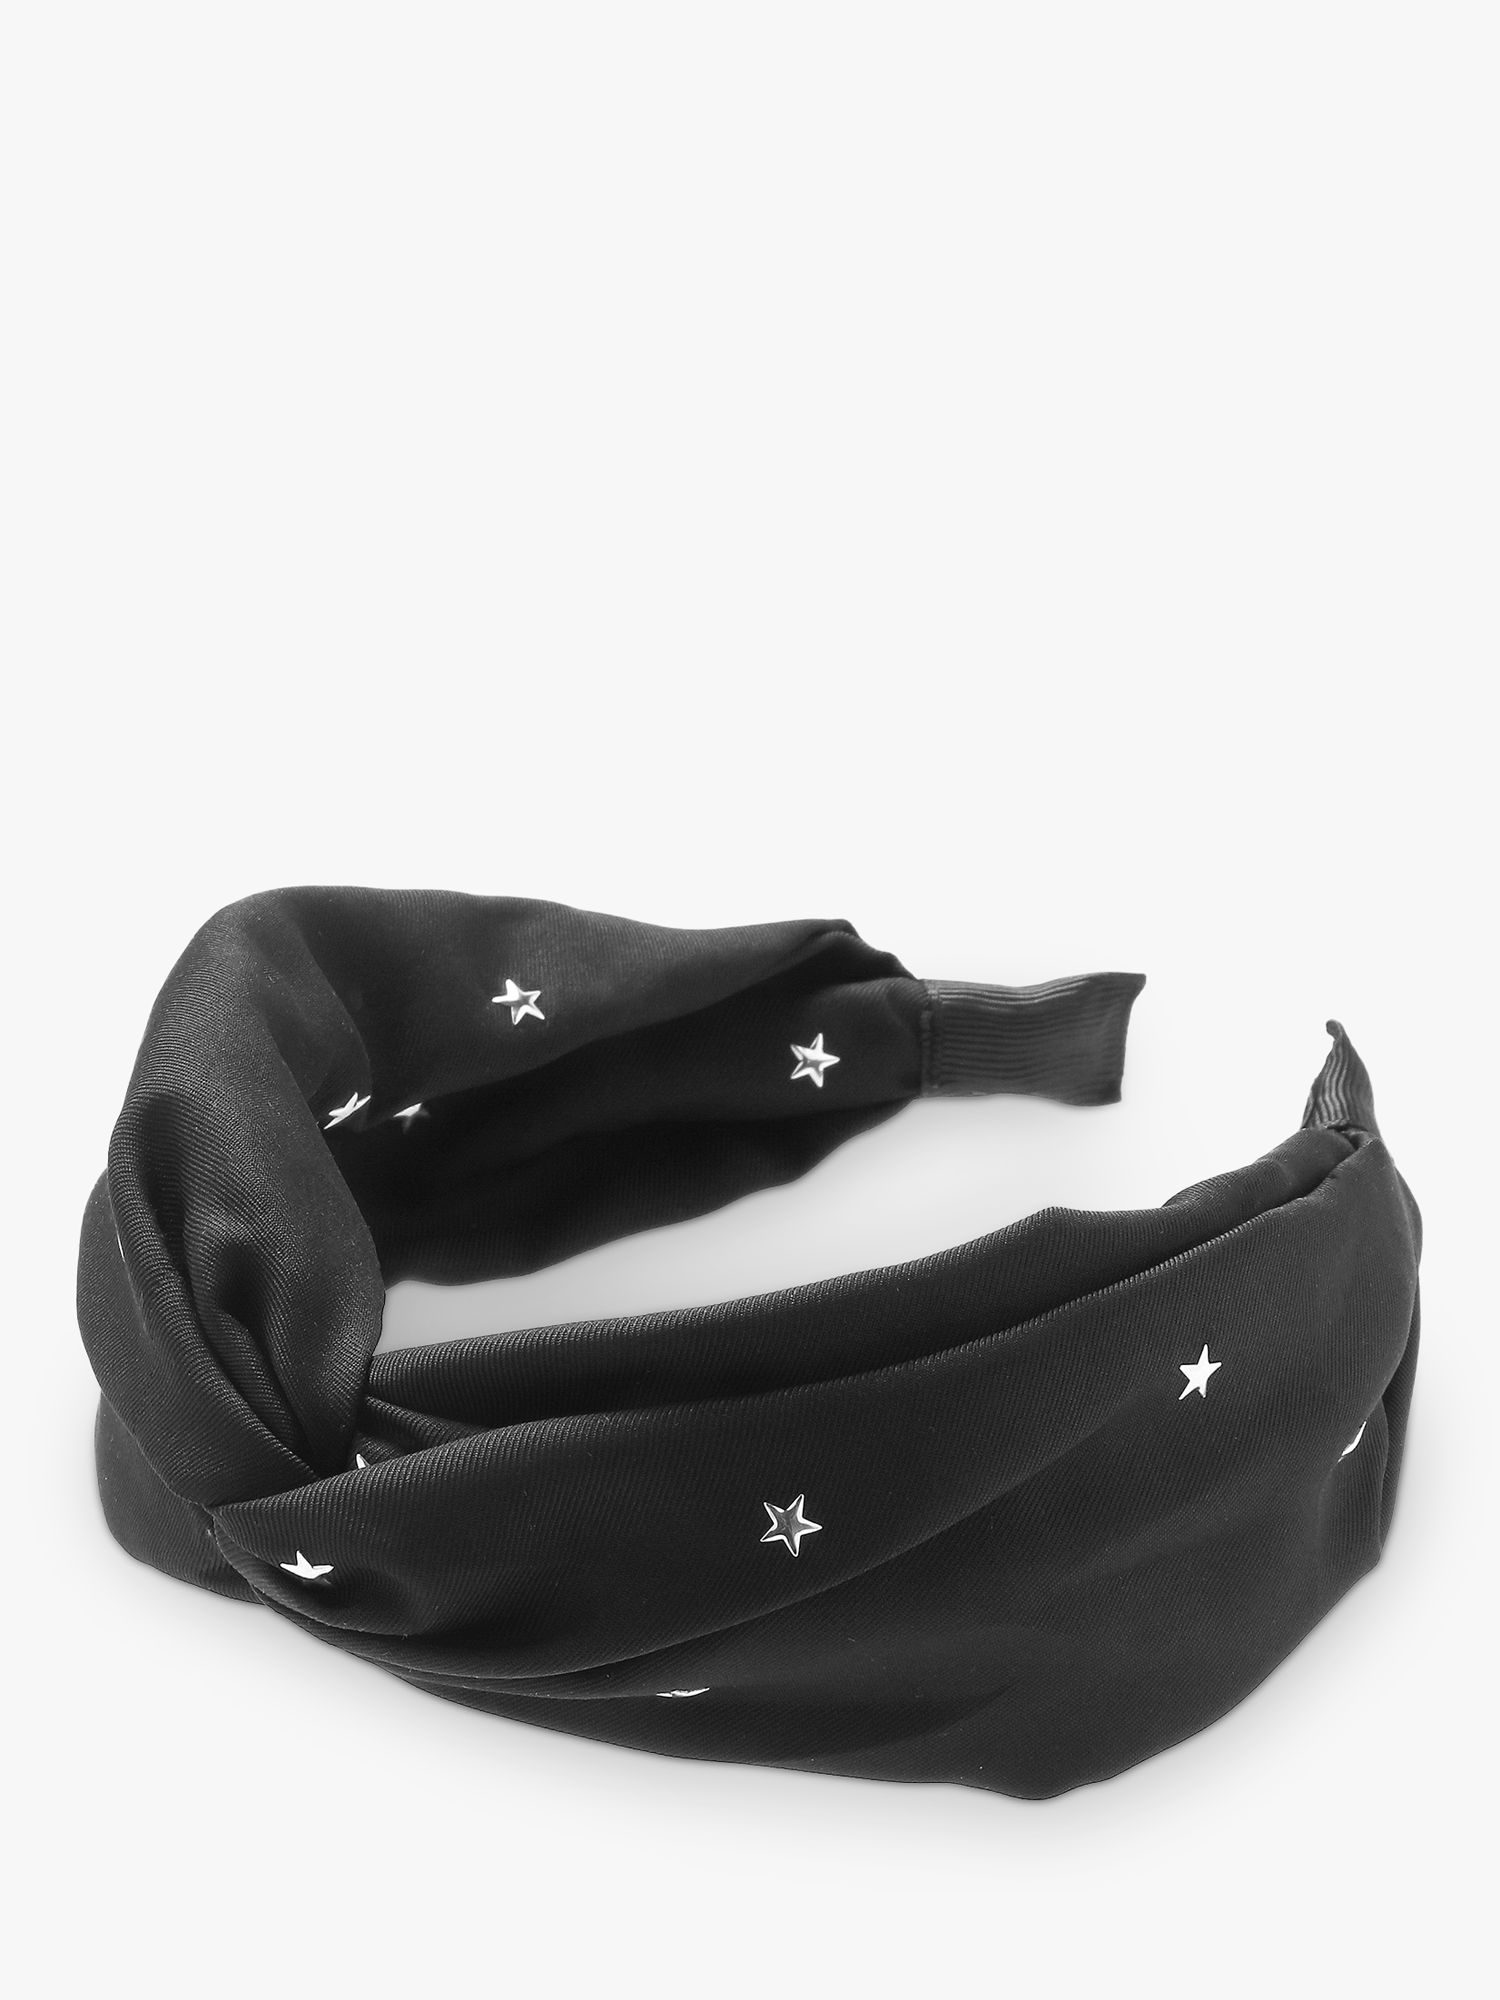 Tutti & Co Star Stud Headband, Black/Silver